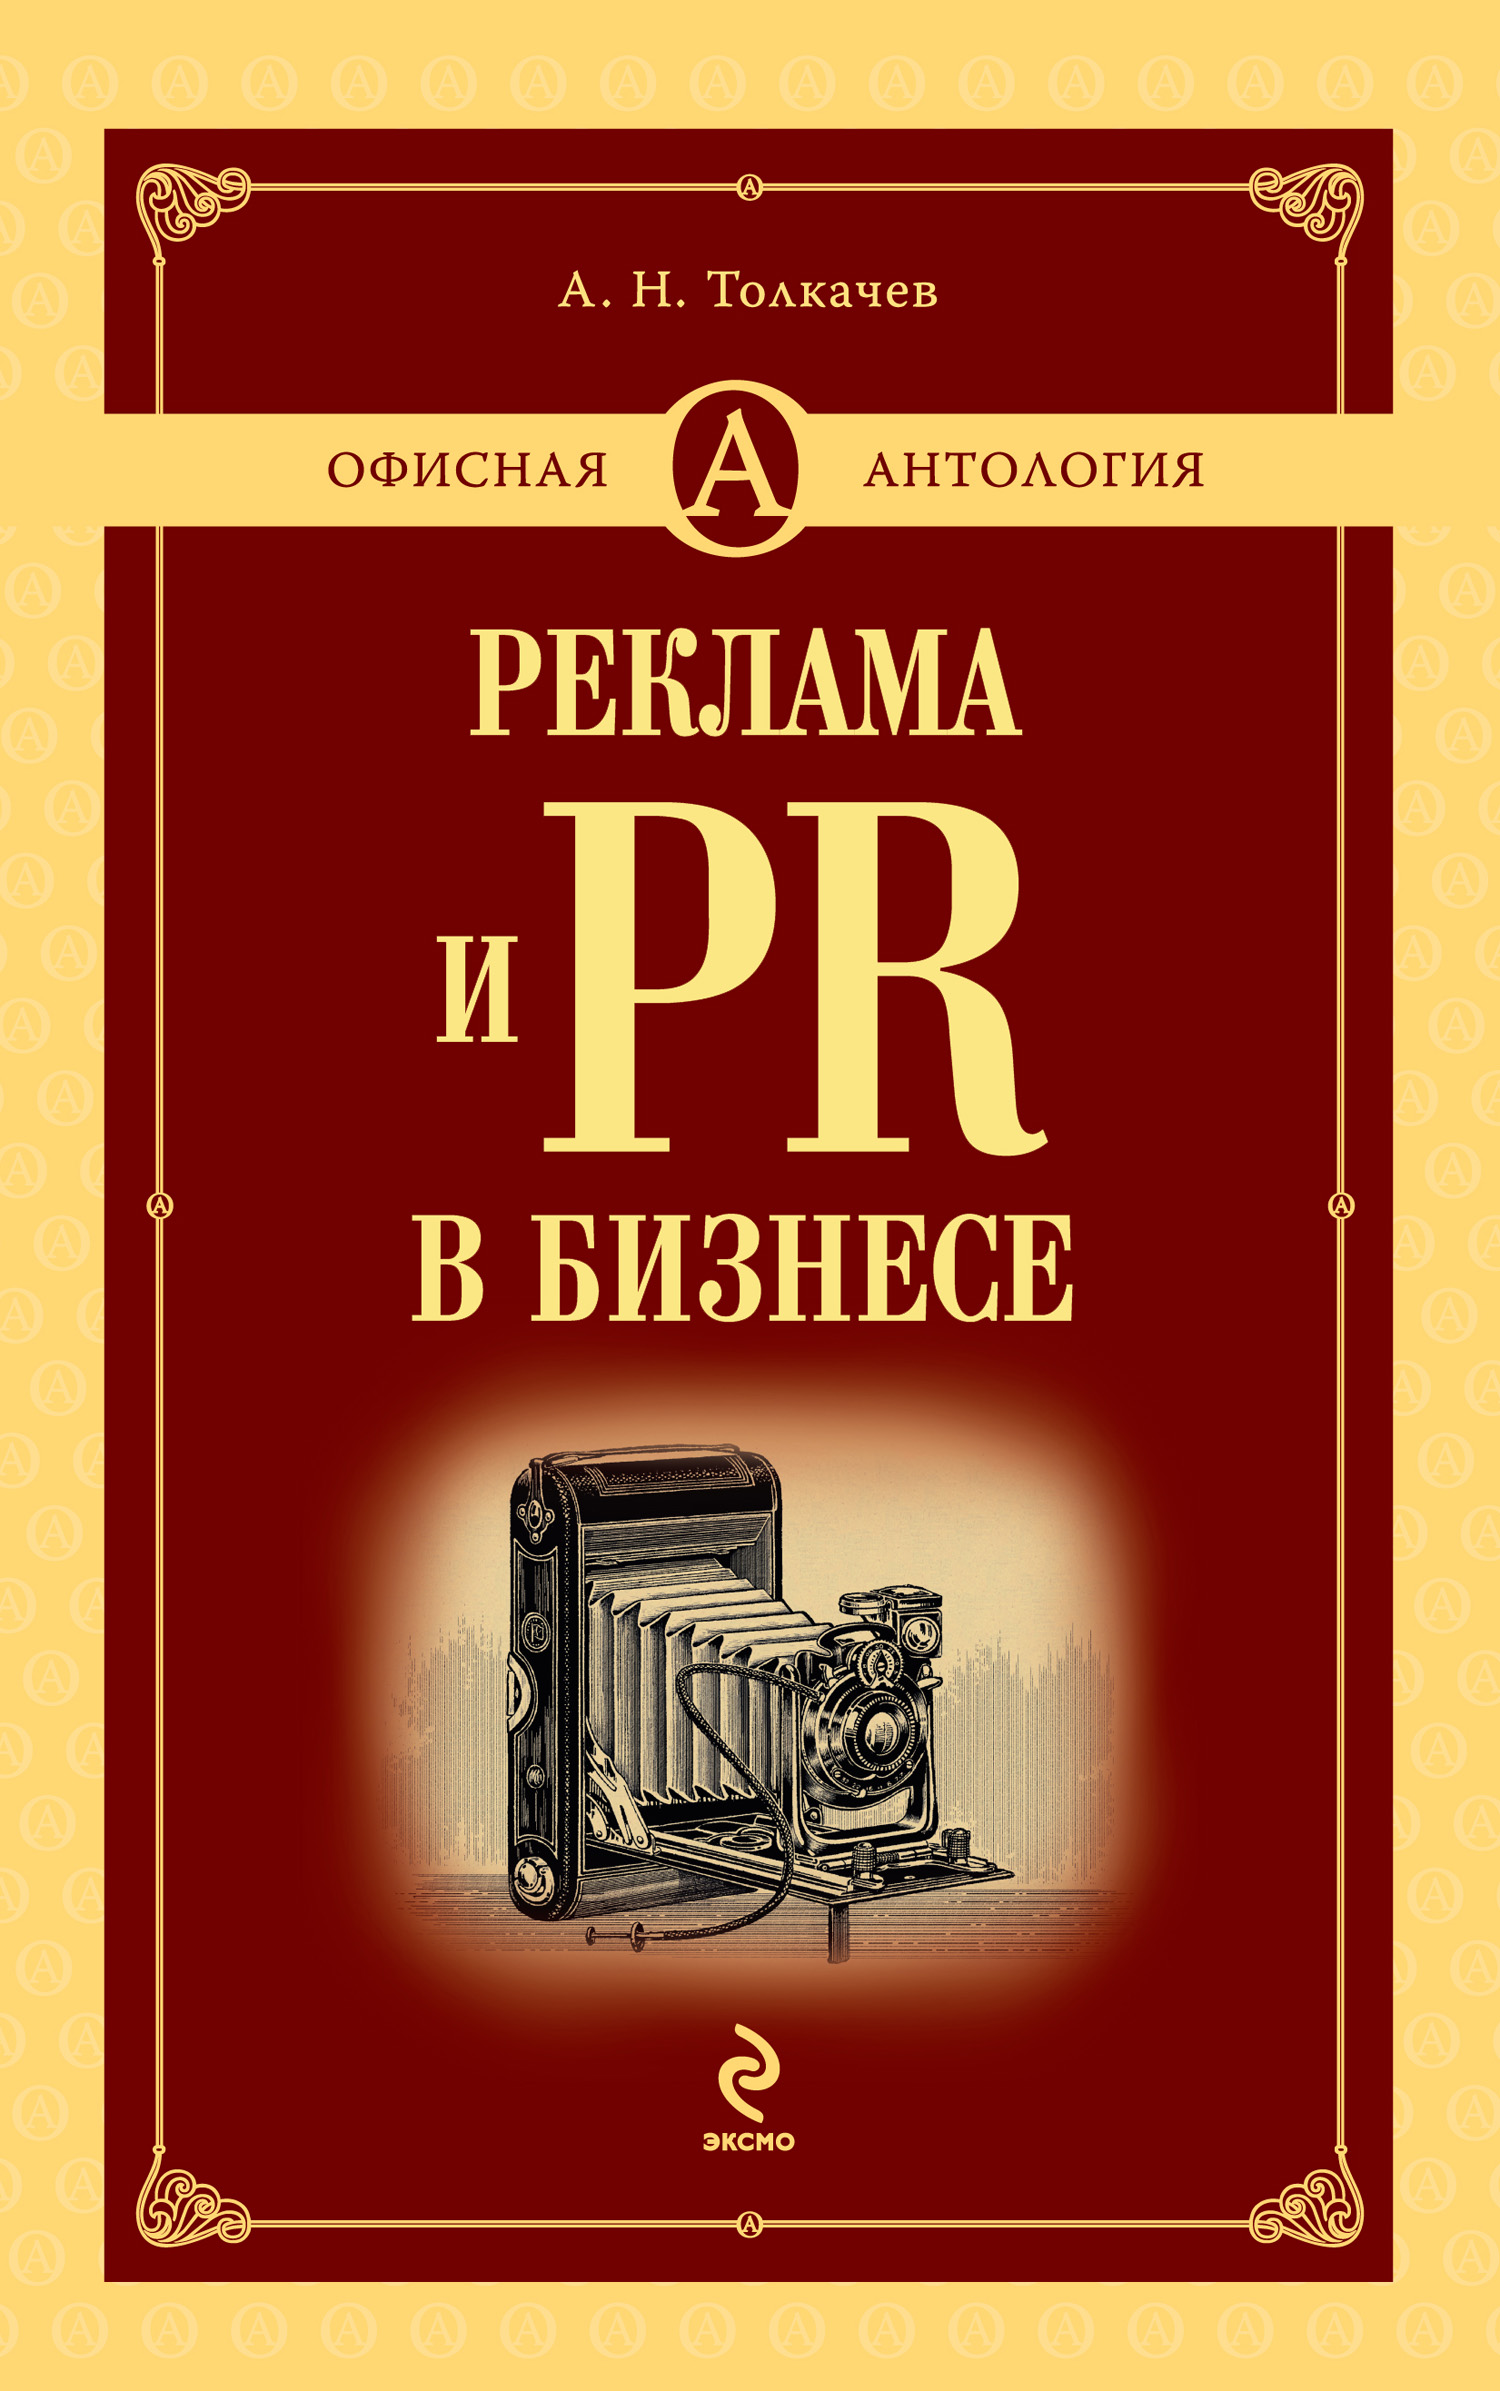 Книга Реклама и PR в бизнесе из серии , созданная Андрей Толкачев, может относится к жанру Маркетинг, PR, реклама. Стоимость электронной книги Реклама и PR в бизнесе с идентификатором 2447905 составляет 176.00 руб.